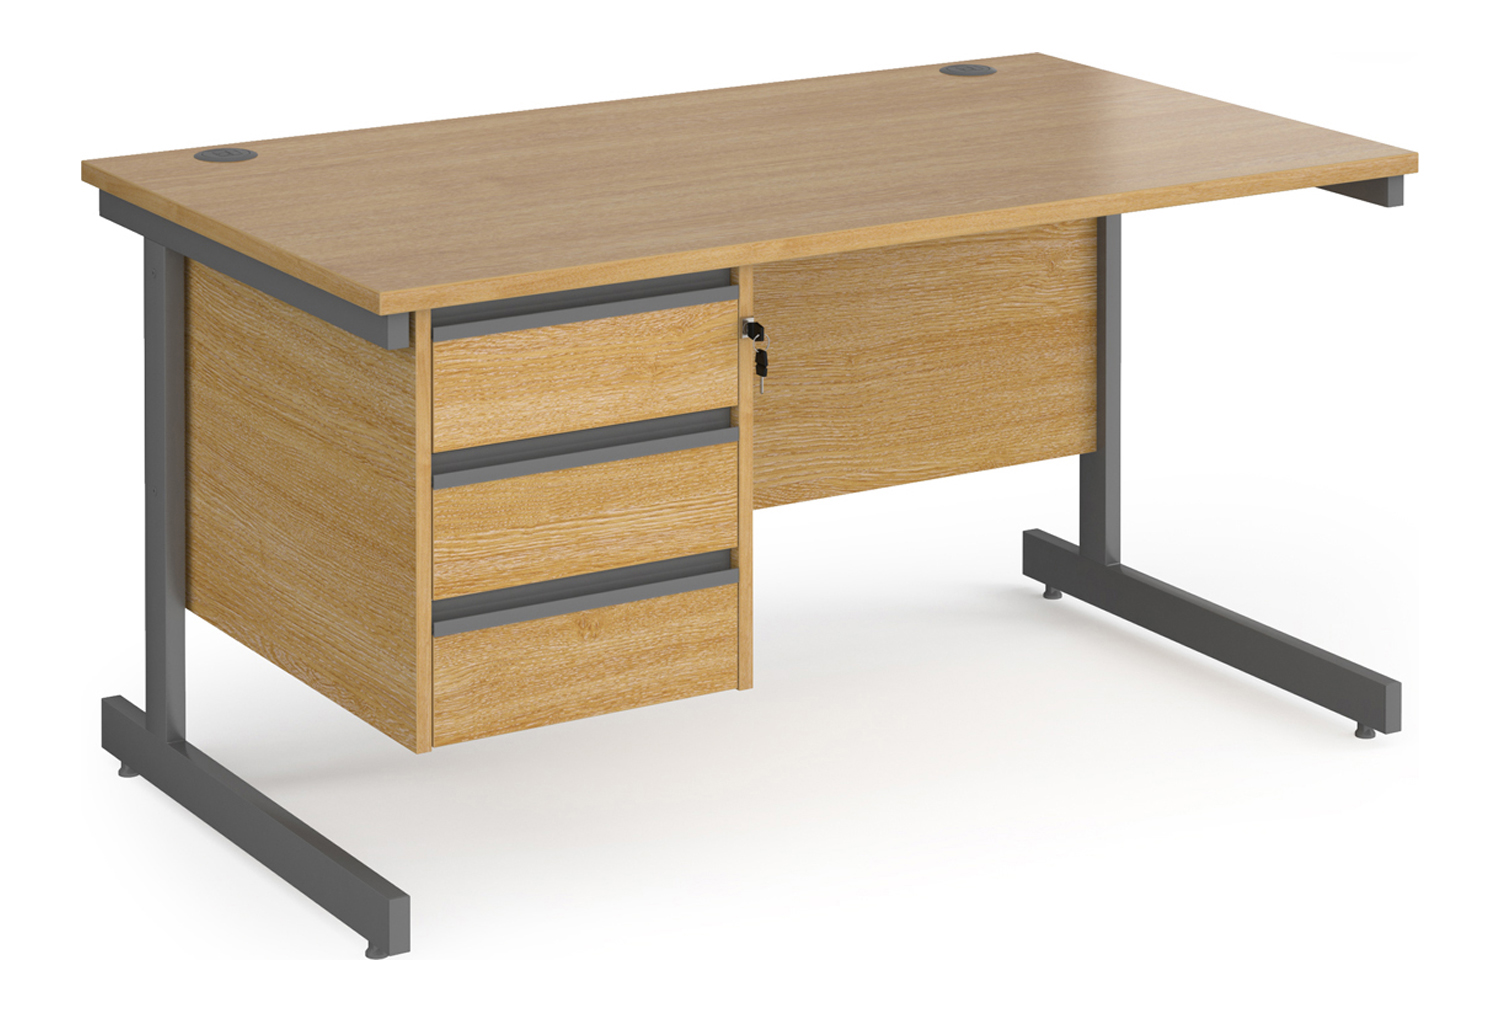 Value Line Classic+ Rectangular C-Leg Office Desk 3 Drawers (Graphite Leg), 140wx80dx73h (cm), Oak, Express Delivery